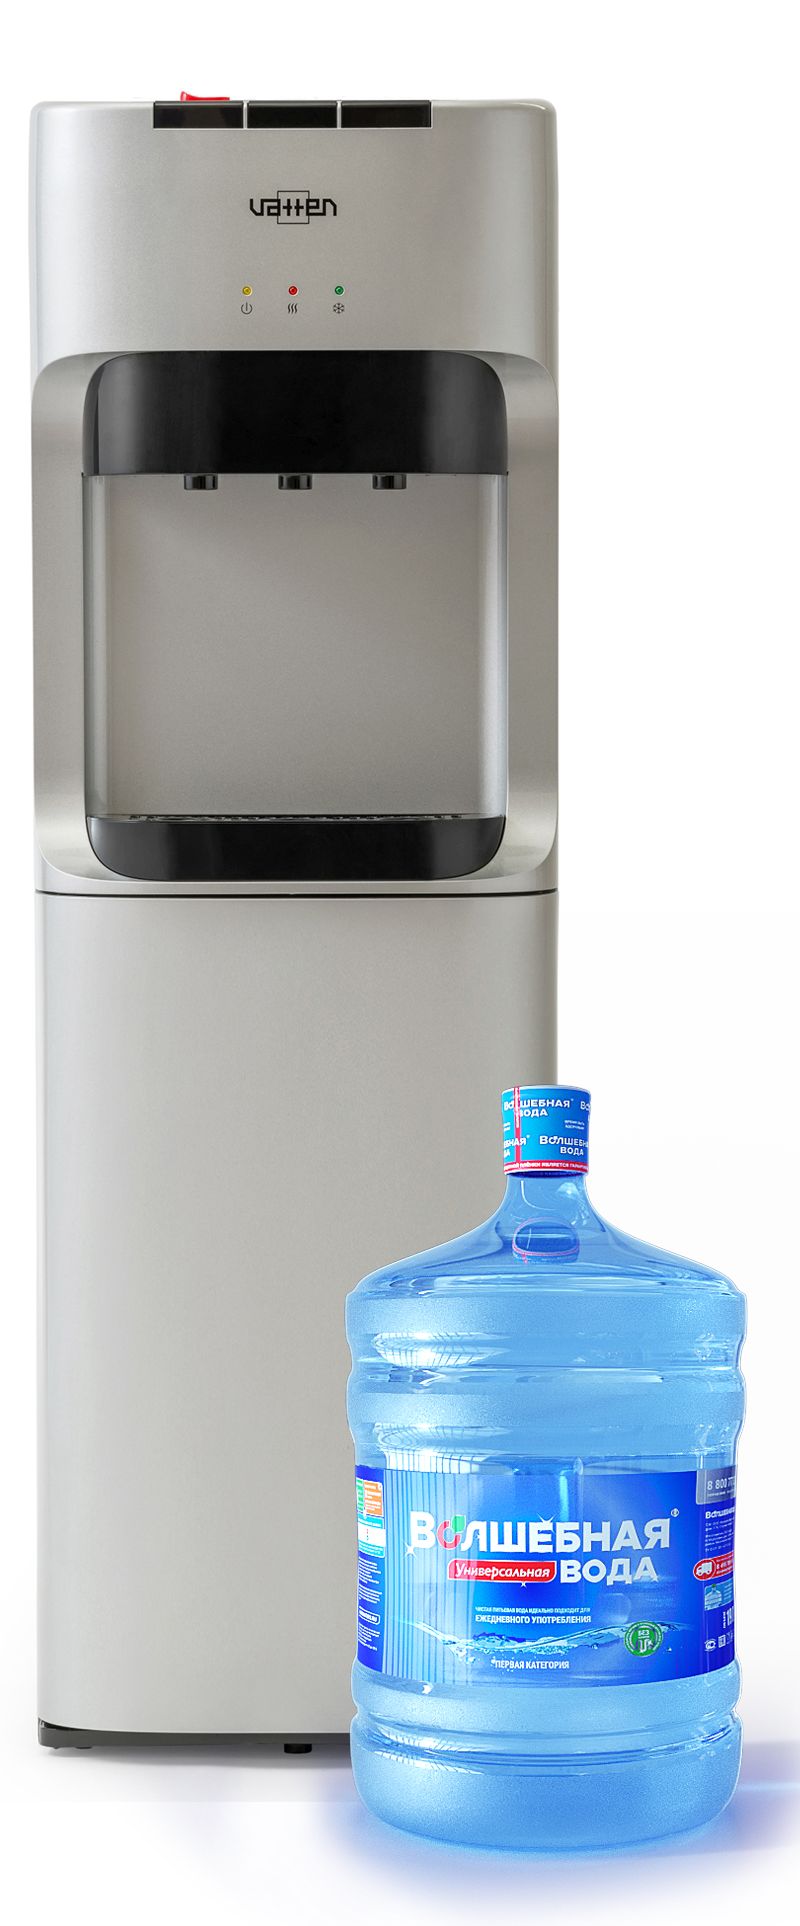 Кулер для воды VATTEN L45SE - цены на кулеры для воды  .